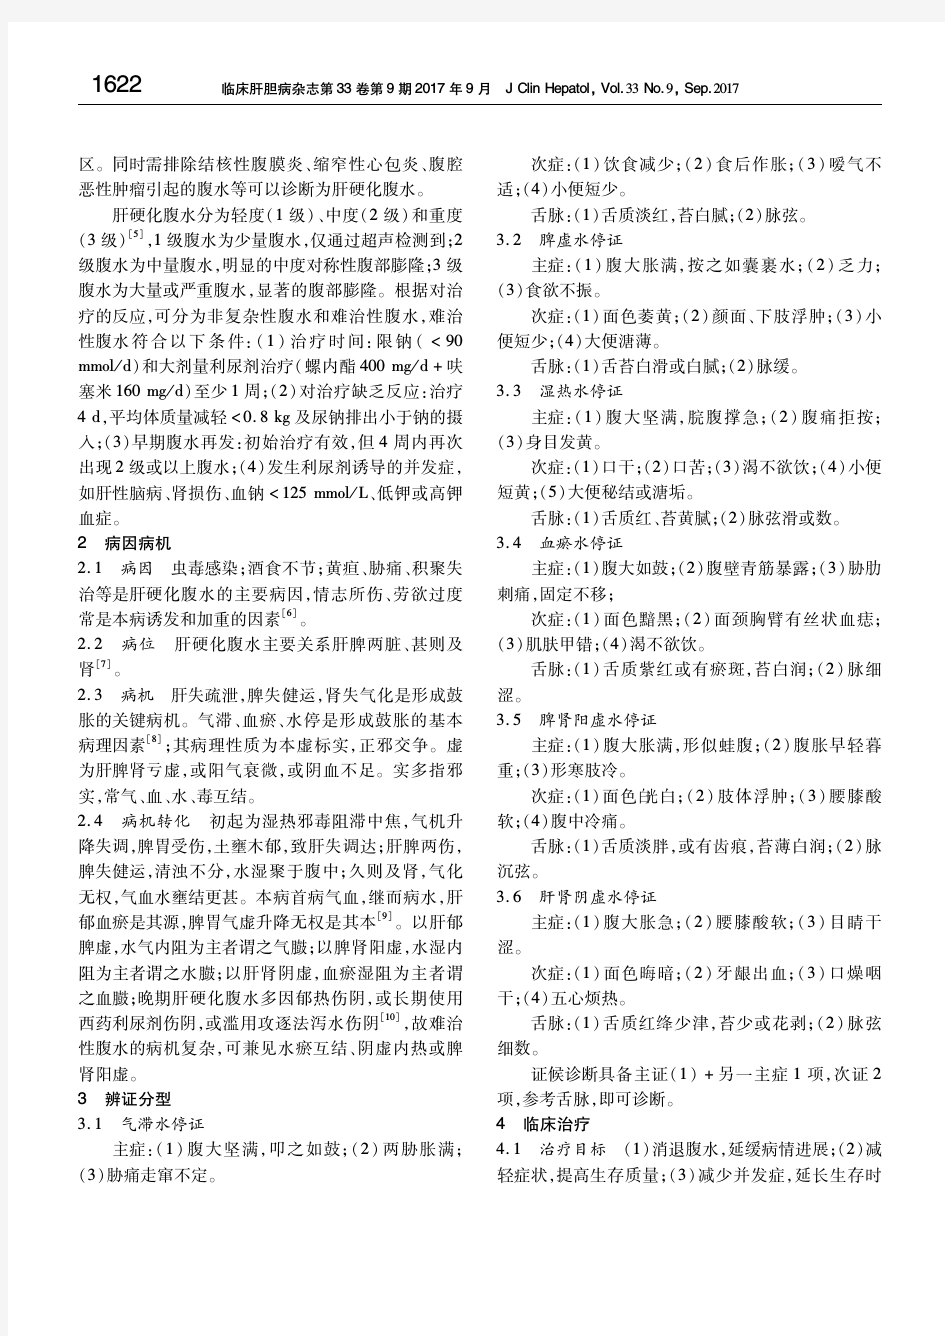 肝硬化腹水中医诊疗专家共识意见(2017) 中华中医药学会脾胃病分会